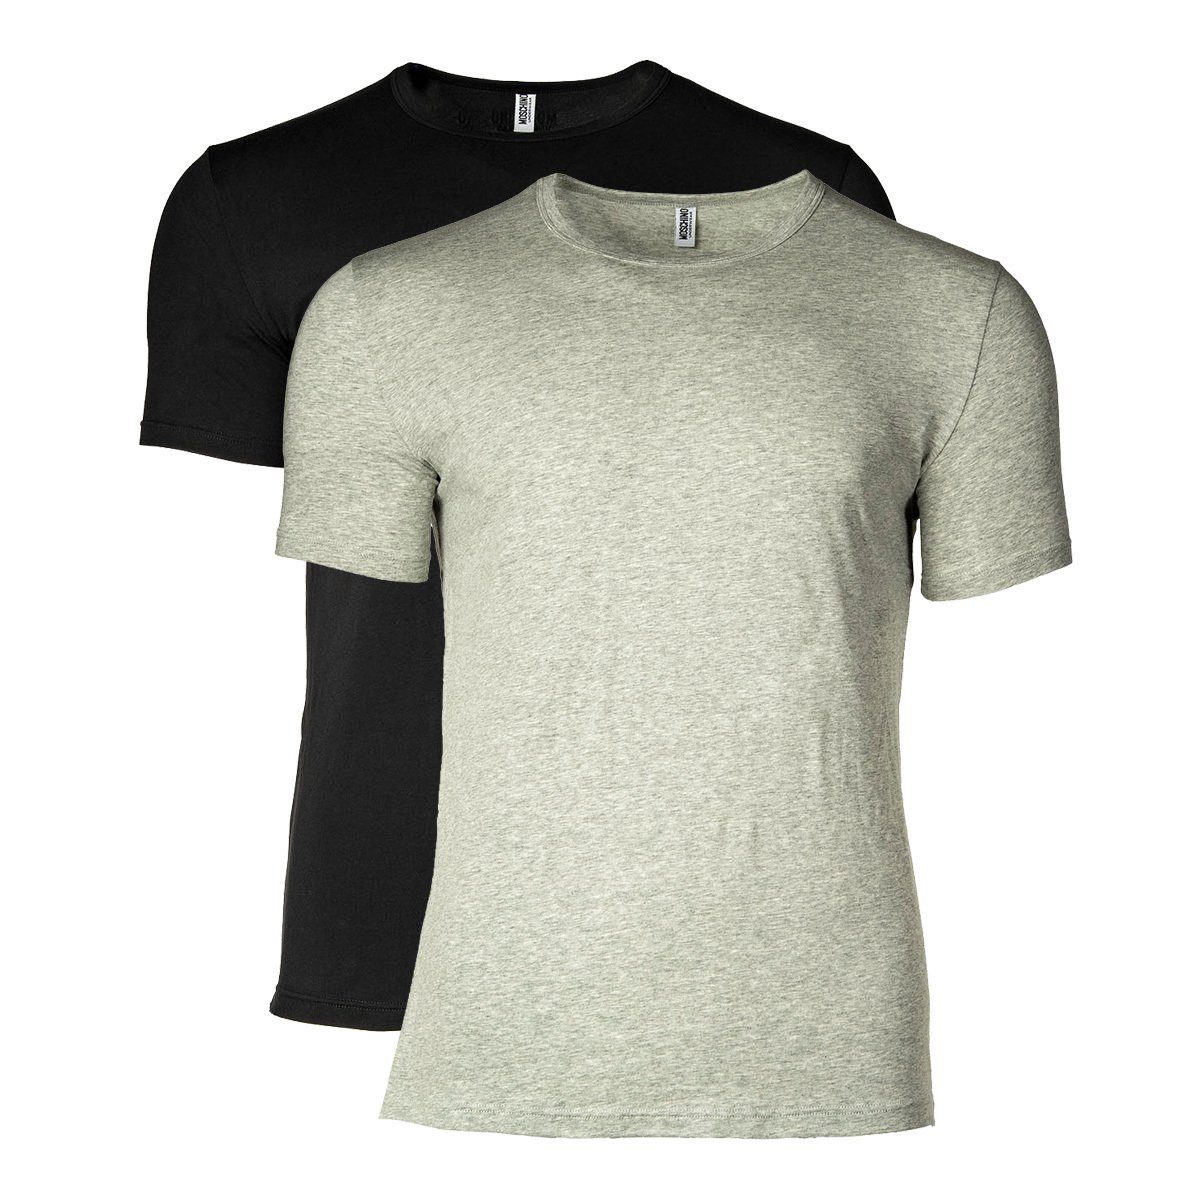 Moschino T-Shirt Herren T-Shirt Rundhals Crew Schwarz/Grau 2er Pack - Neck